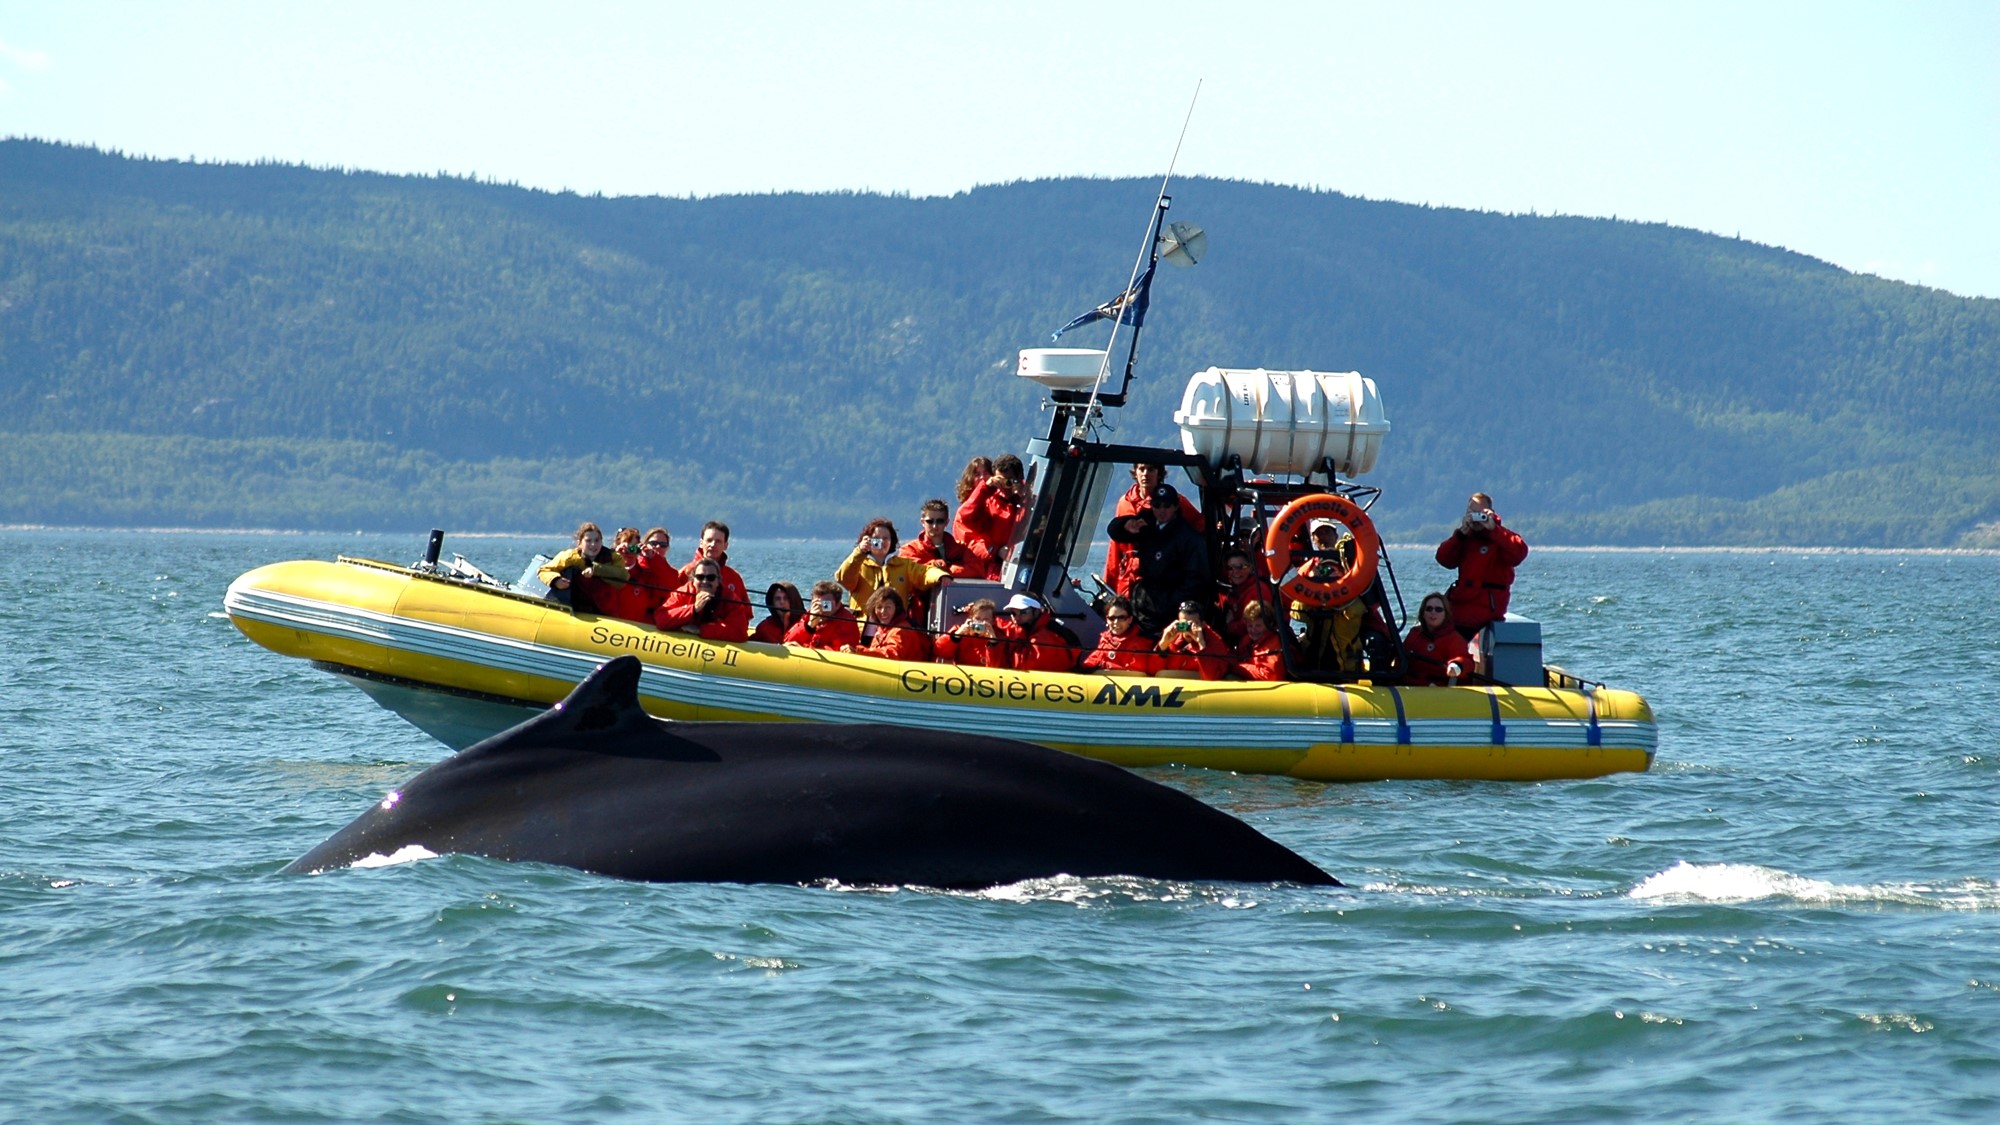 Зодиакальный тур по наблюдению за китами по реке Сагеней с круизами AML, 9 способов исследовать очаровательный Шарлевуа